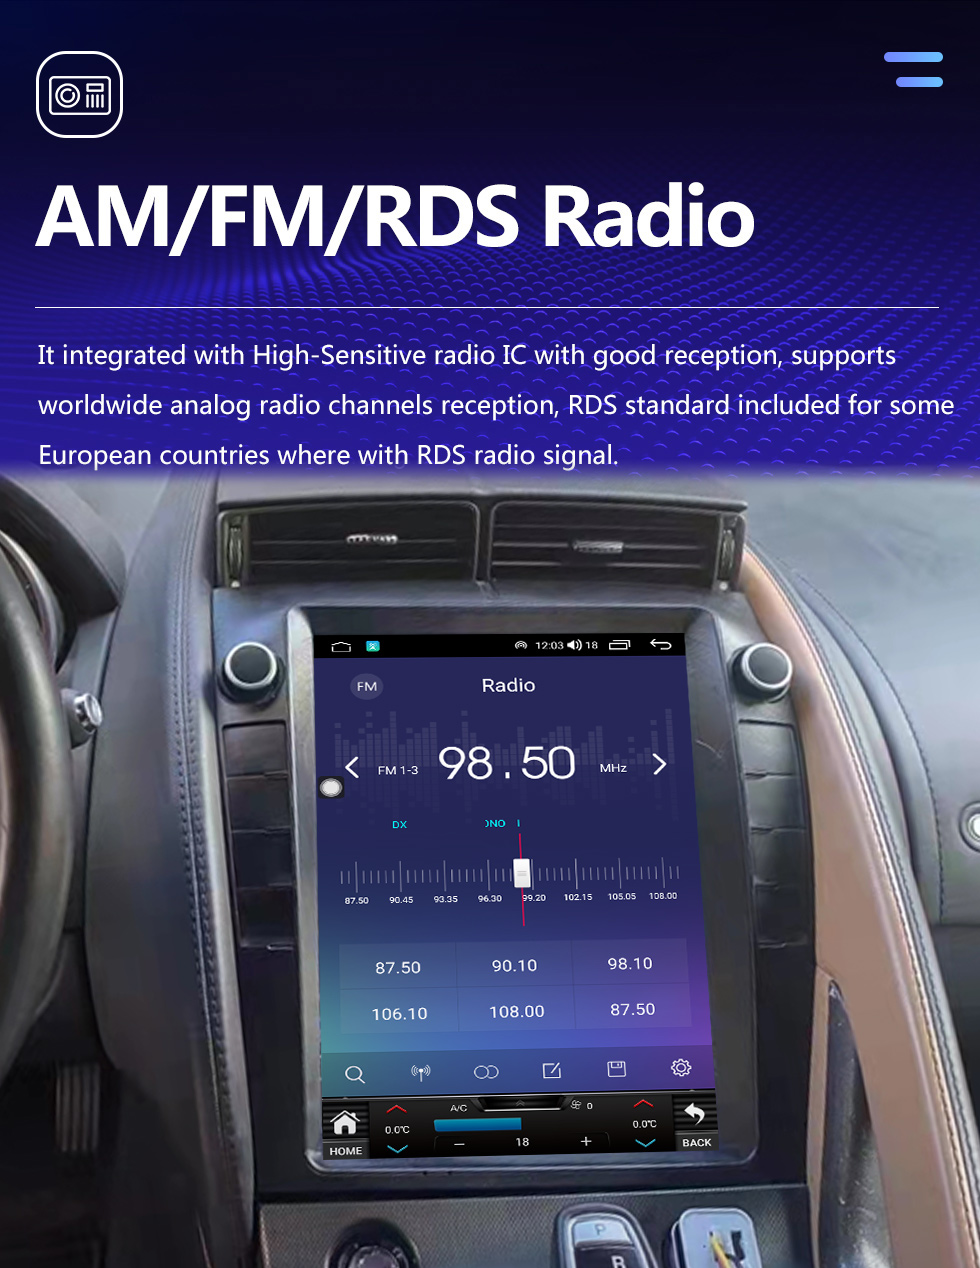 Seicane OEM 9,7 pouces Android 10.0 pour 2013 Jaguar F-TYPE XJ Radio Système de navigation GPS avec écran tactile HD Prise en charge Bluetooth Carplay DVR TPMS OBD2